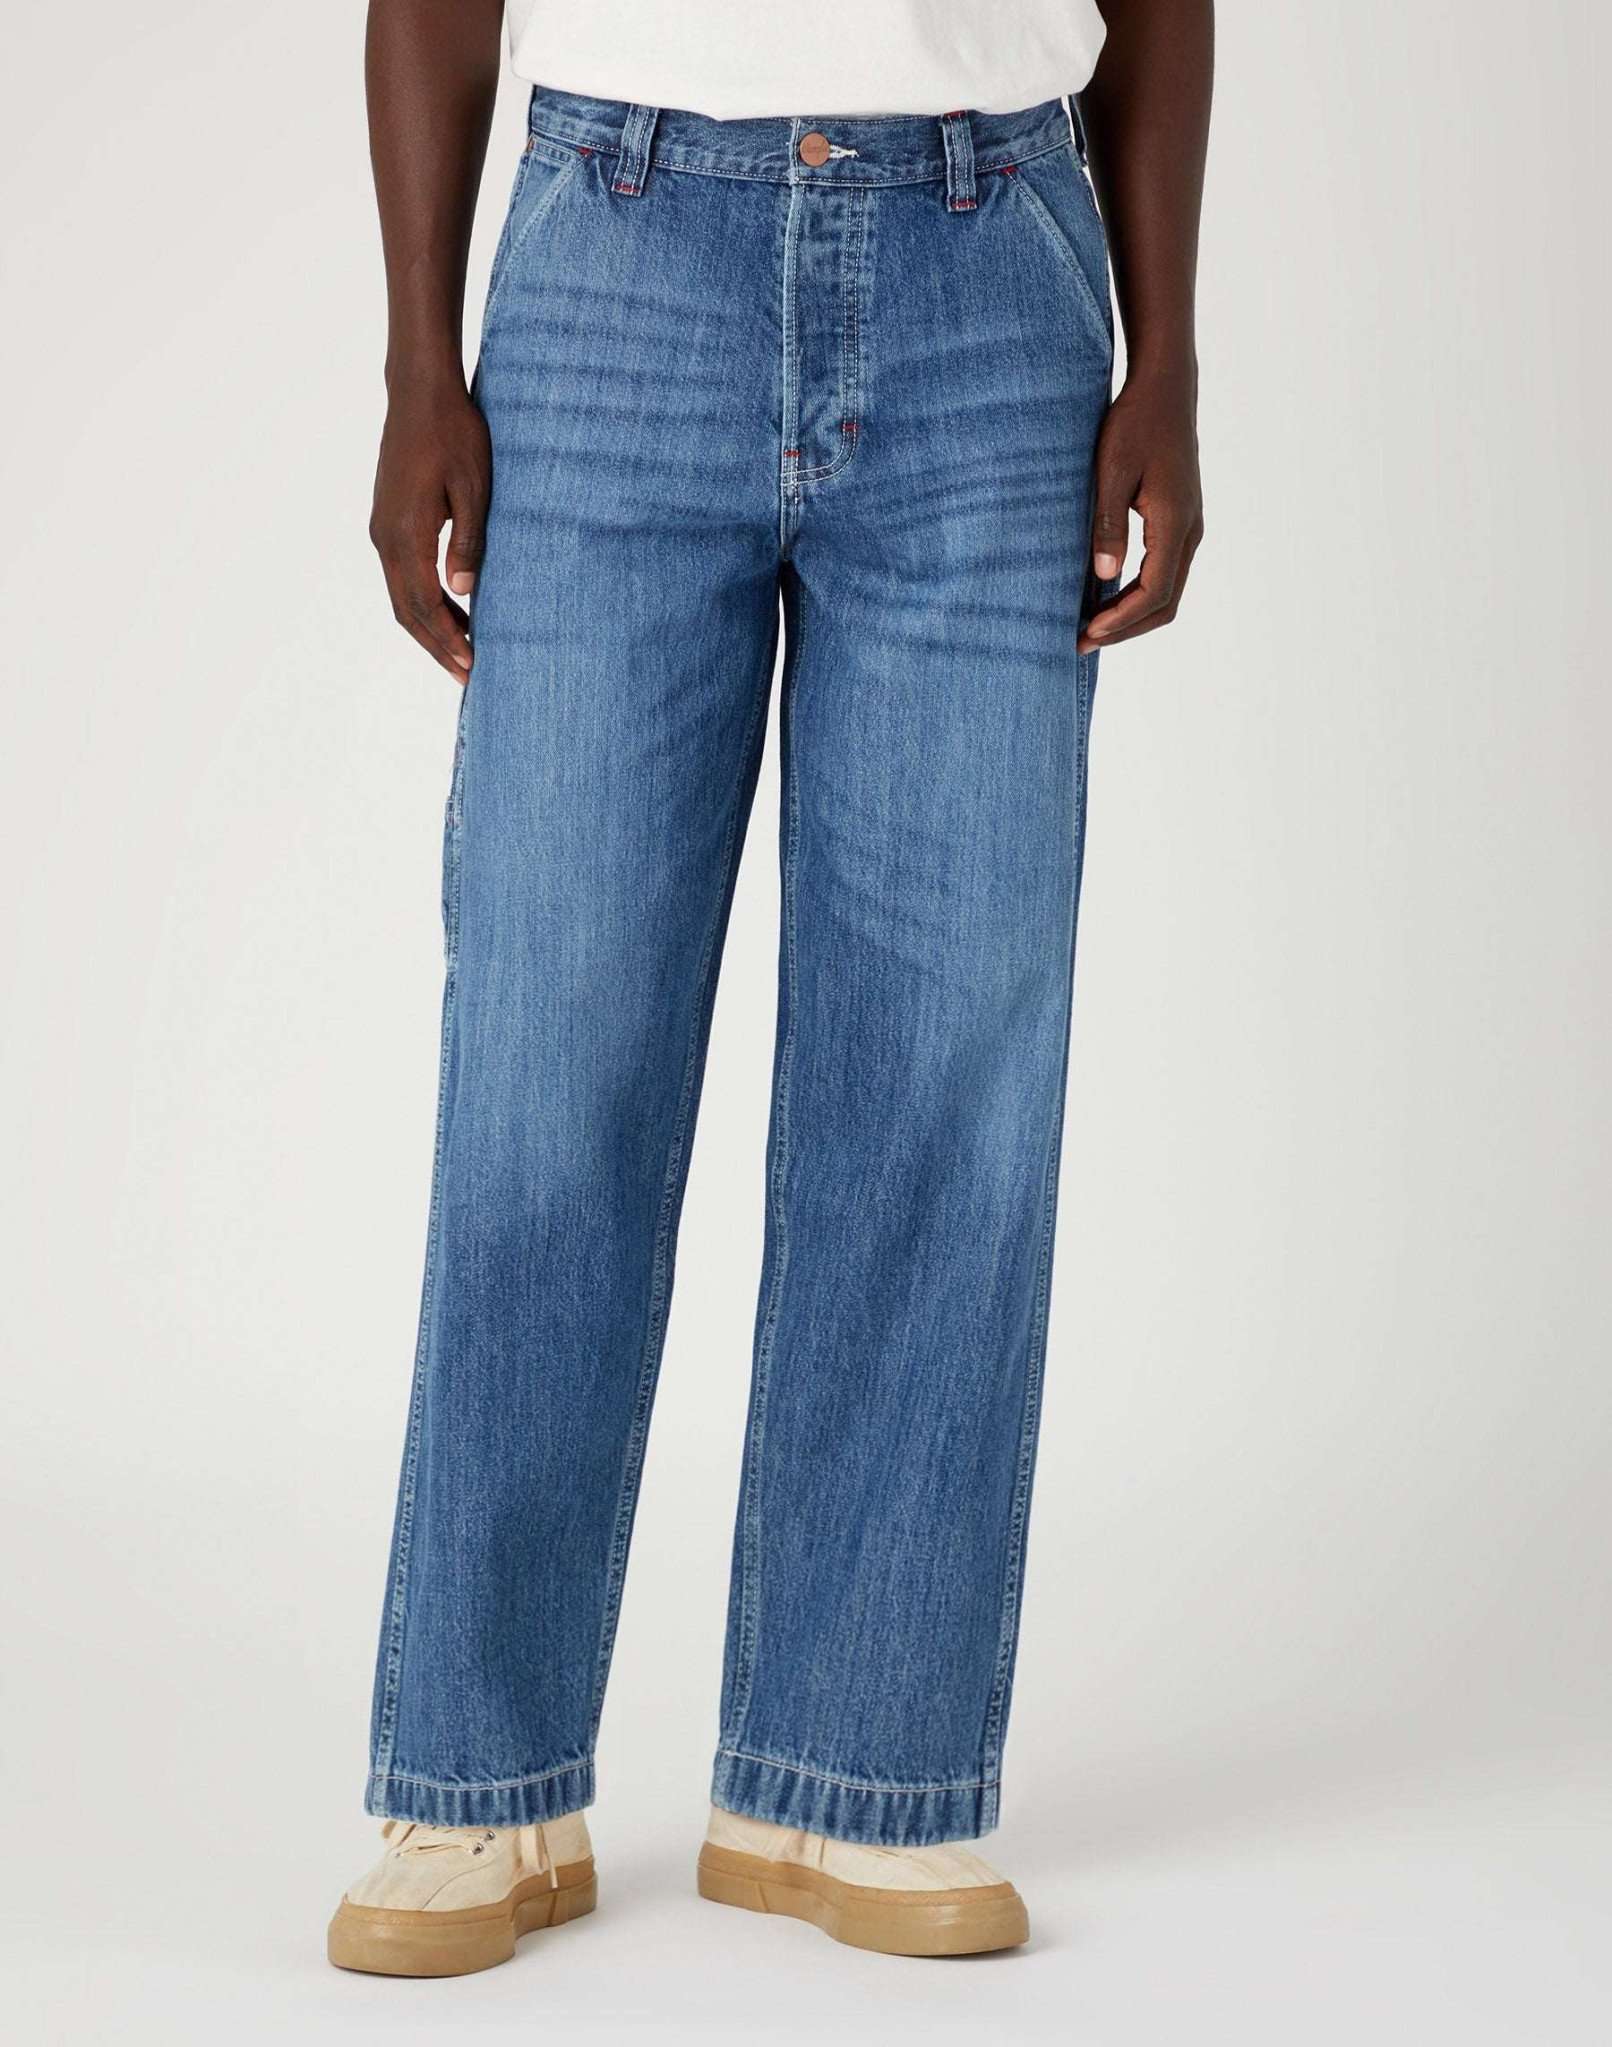 Casey Jones Utility in Paint Splatter Jeans Wrangler   